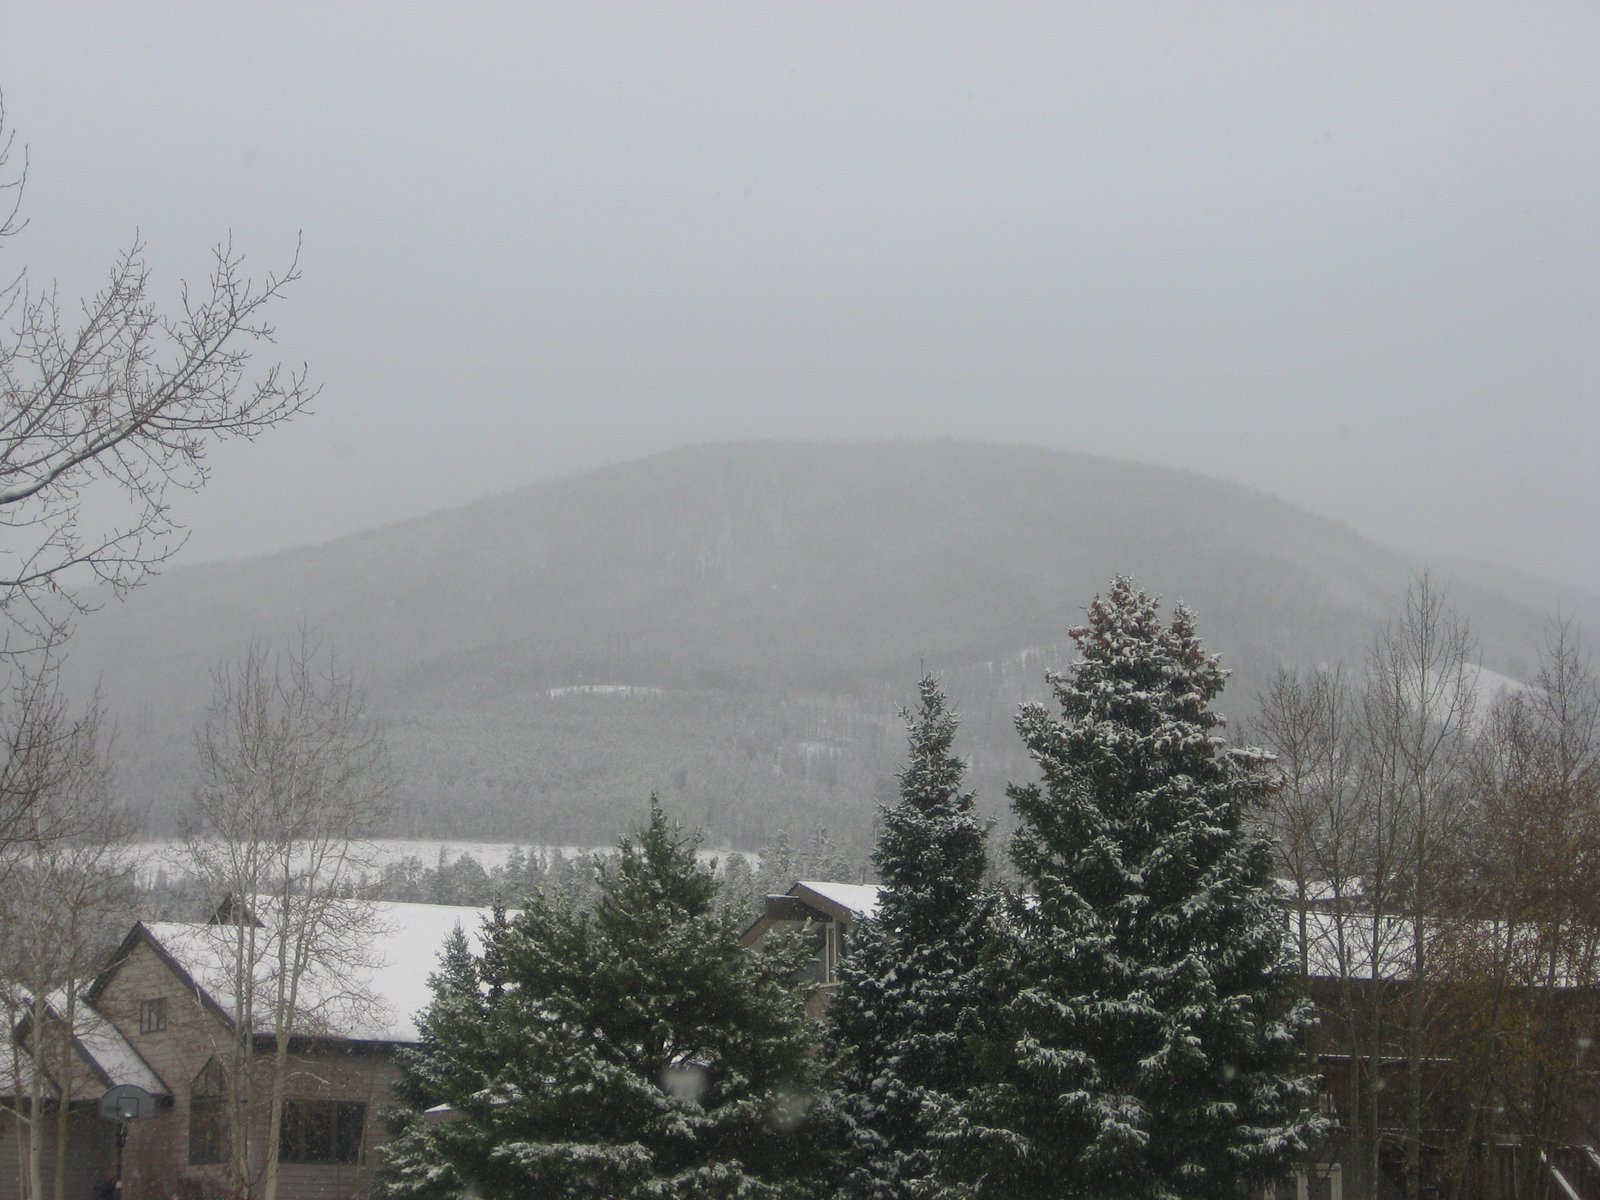 Snowy hill